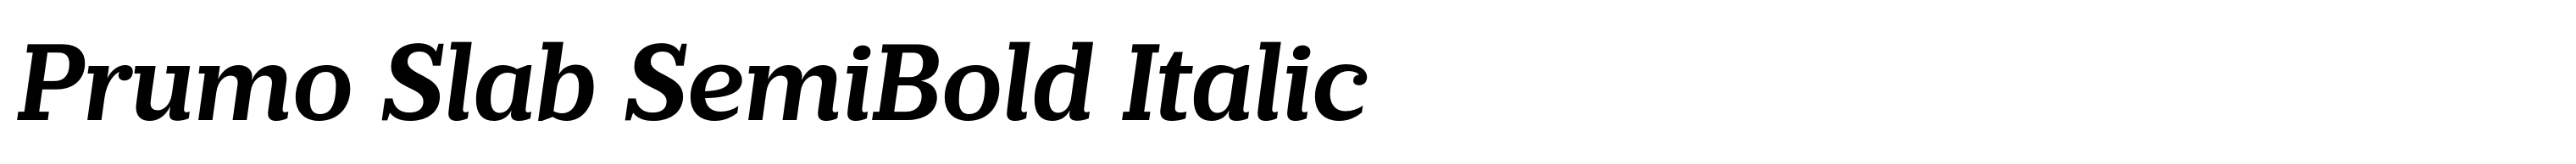 Prumo Slab SemiBold Italic